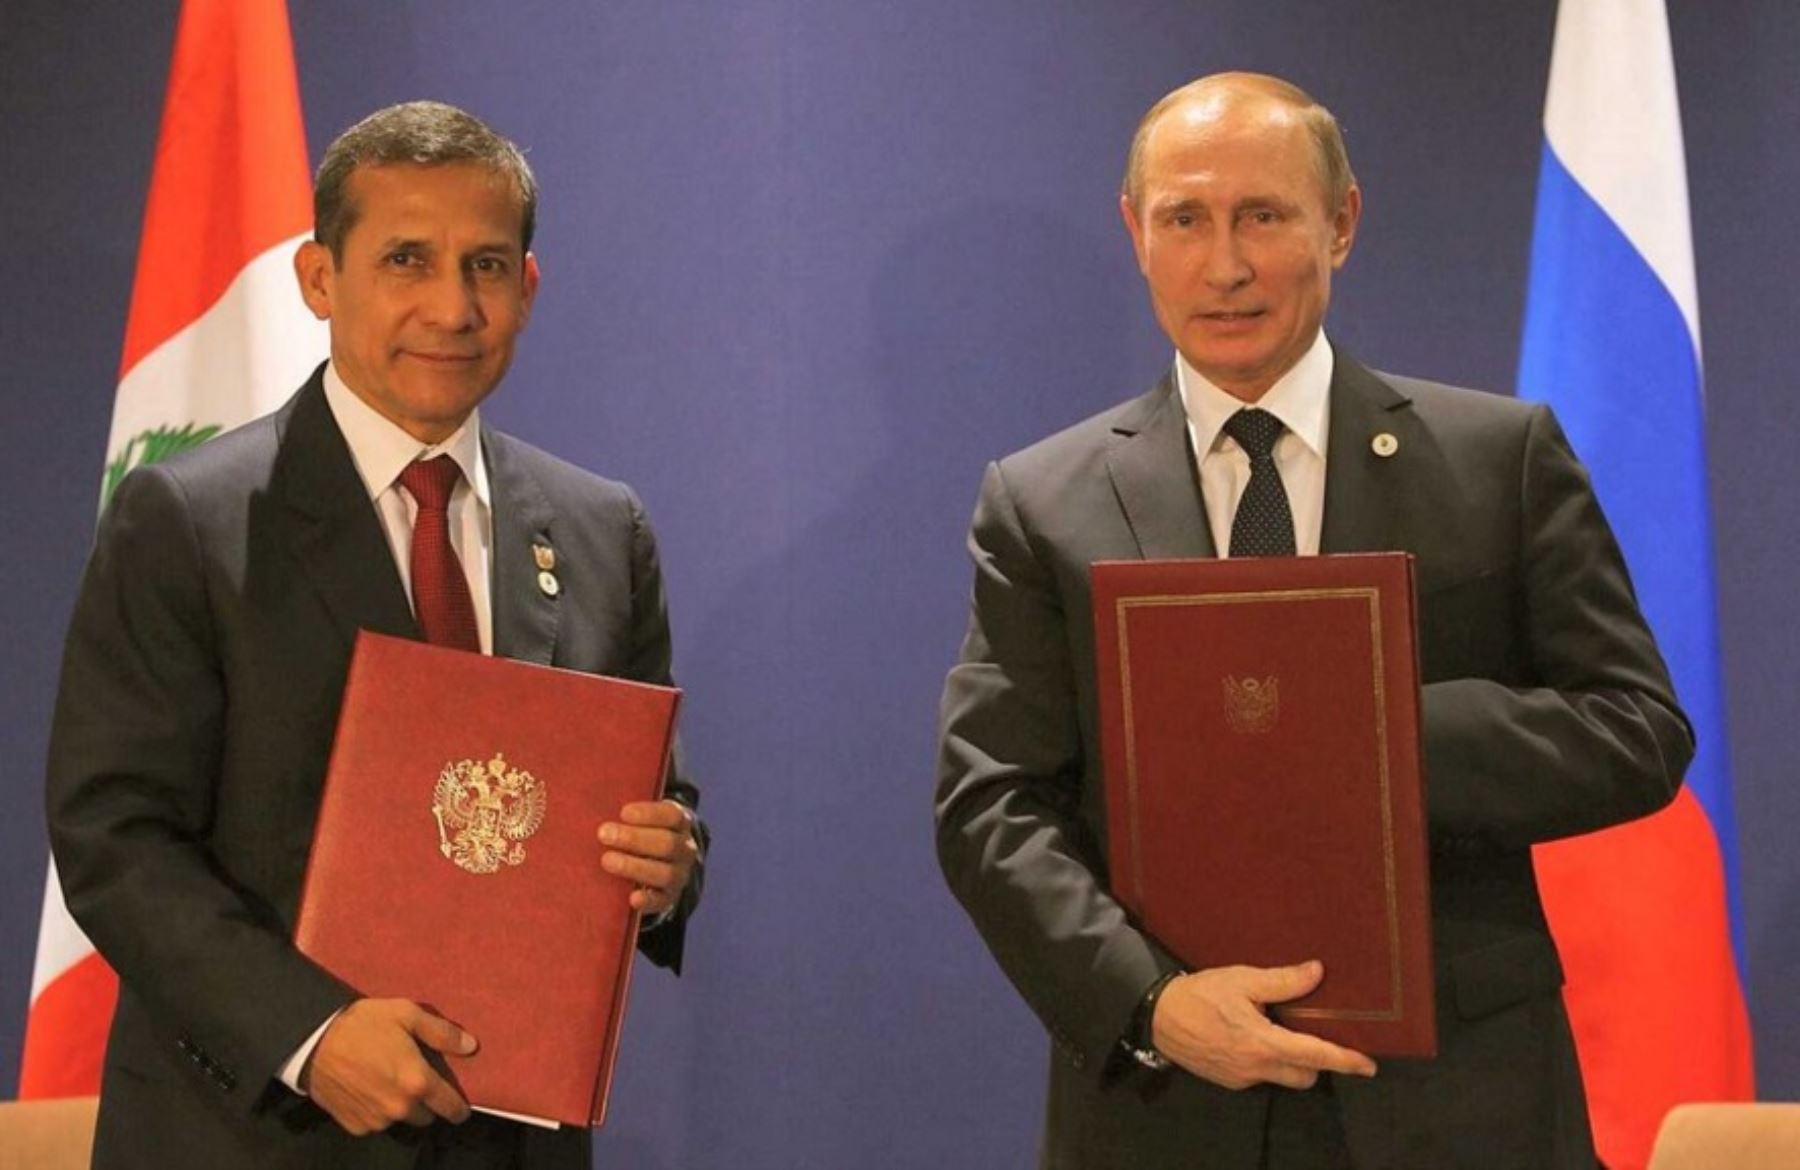 Presidente Ollanta Humala y su homólogo de Rusia, firman convenio de "Asociación Estratégica" en París, en el marco de la COP21. Foto: Presidencia.